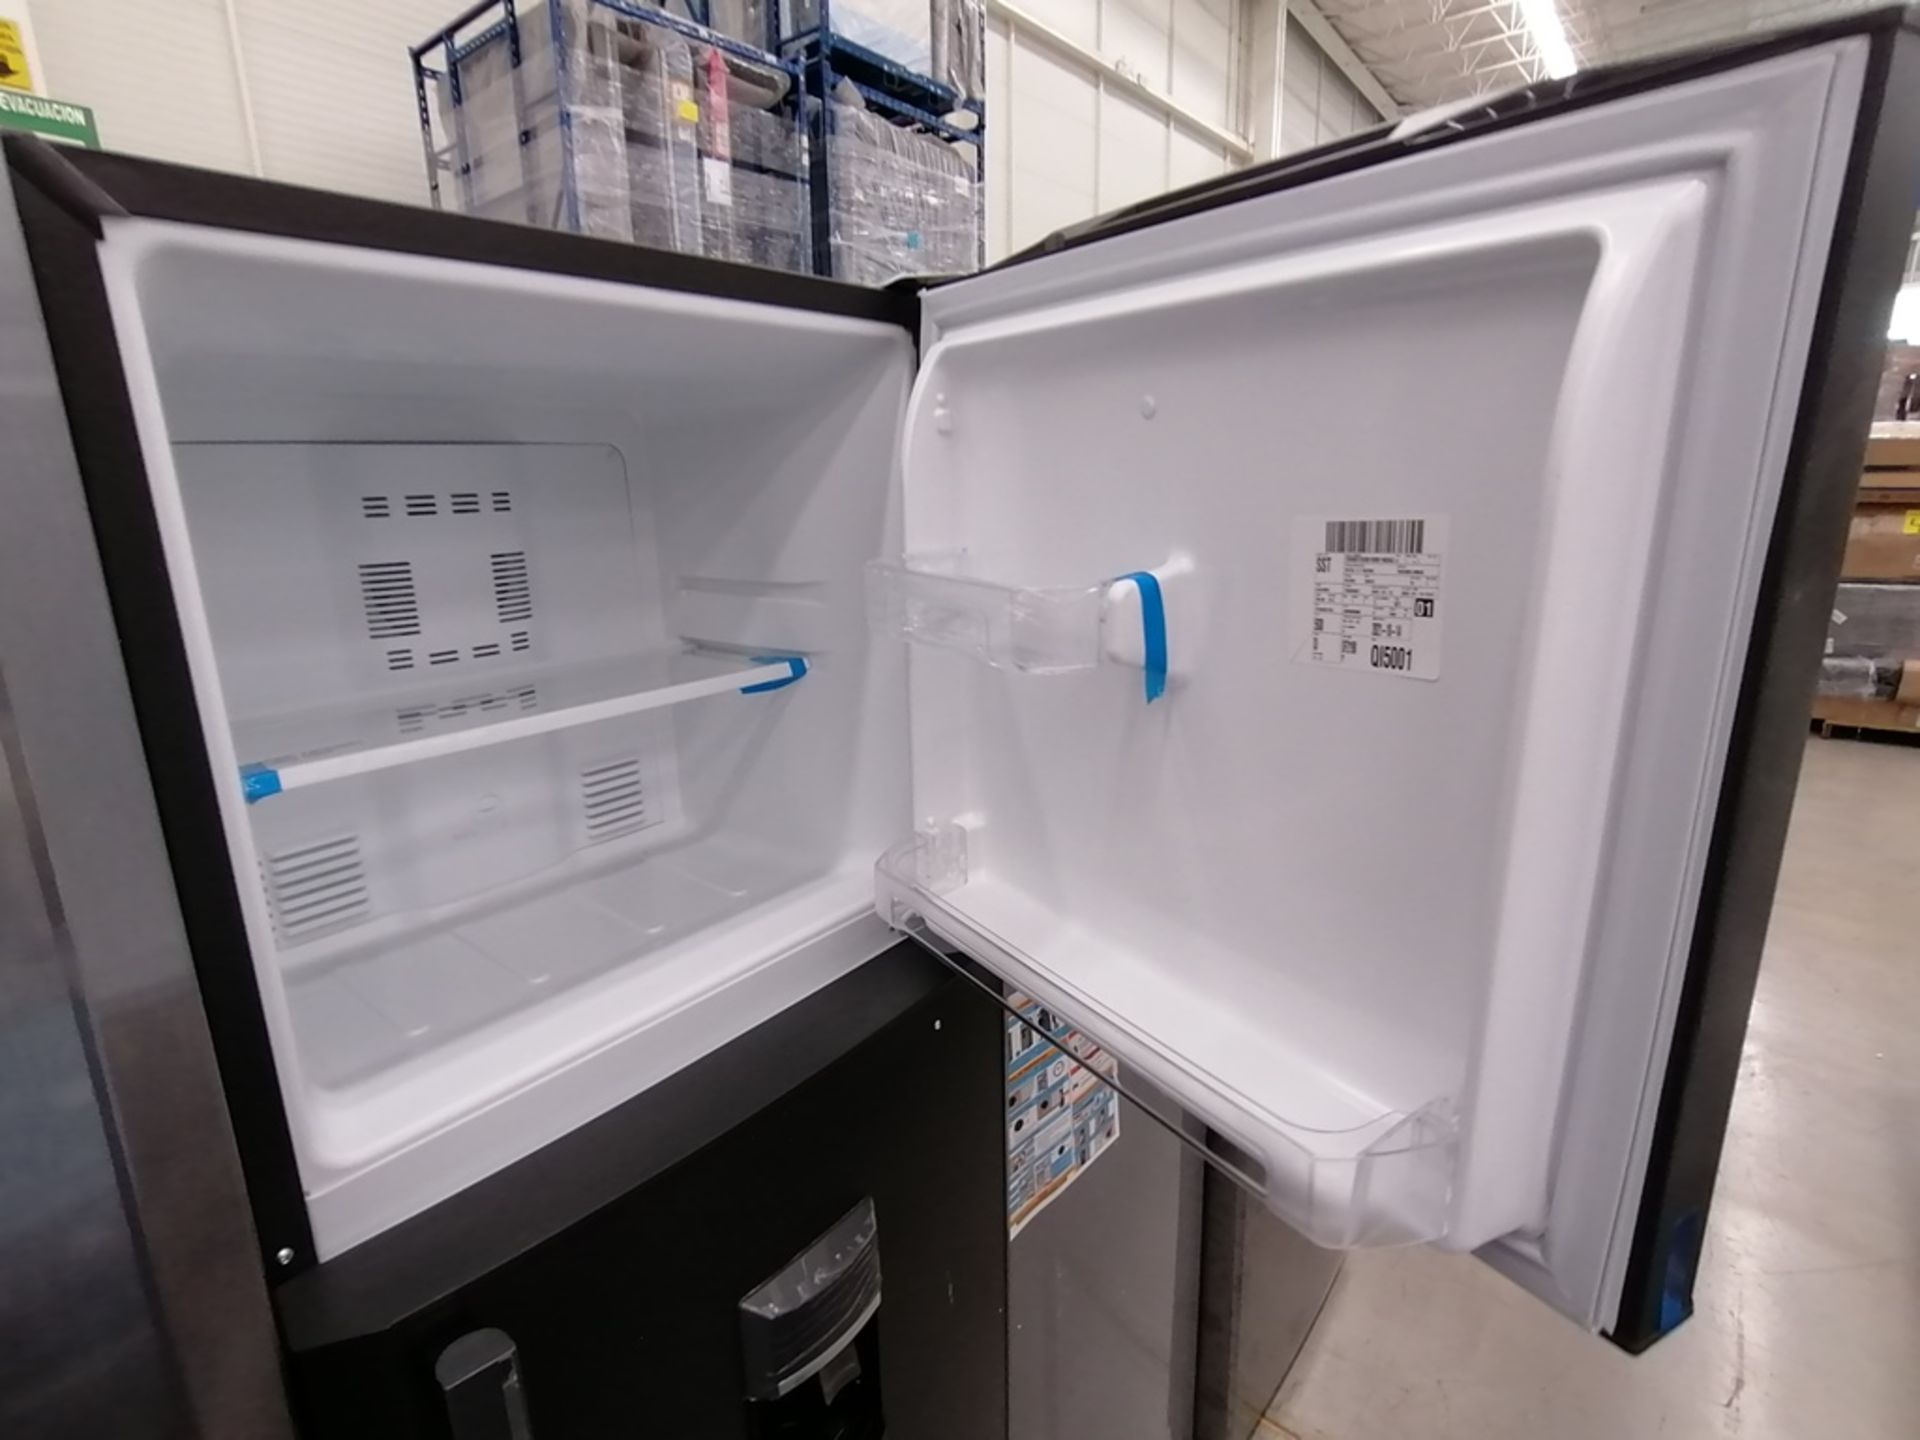 Lote de 2 refrigeradores incluye: 1 Refrigerador con dispensador de agua, Marca Mabe, Modelo RMA300 - Image 4 of 15